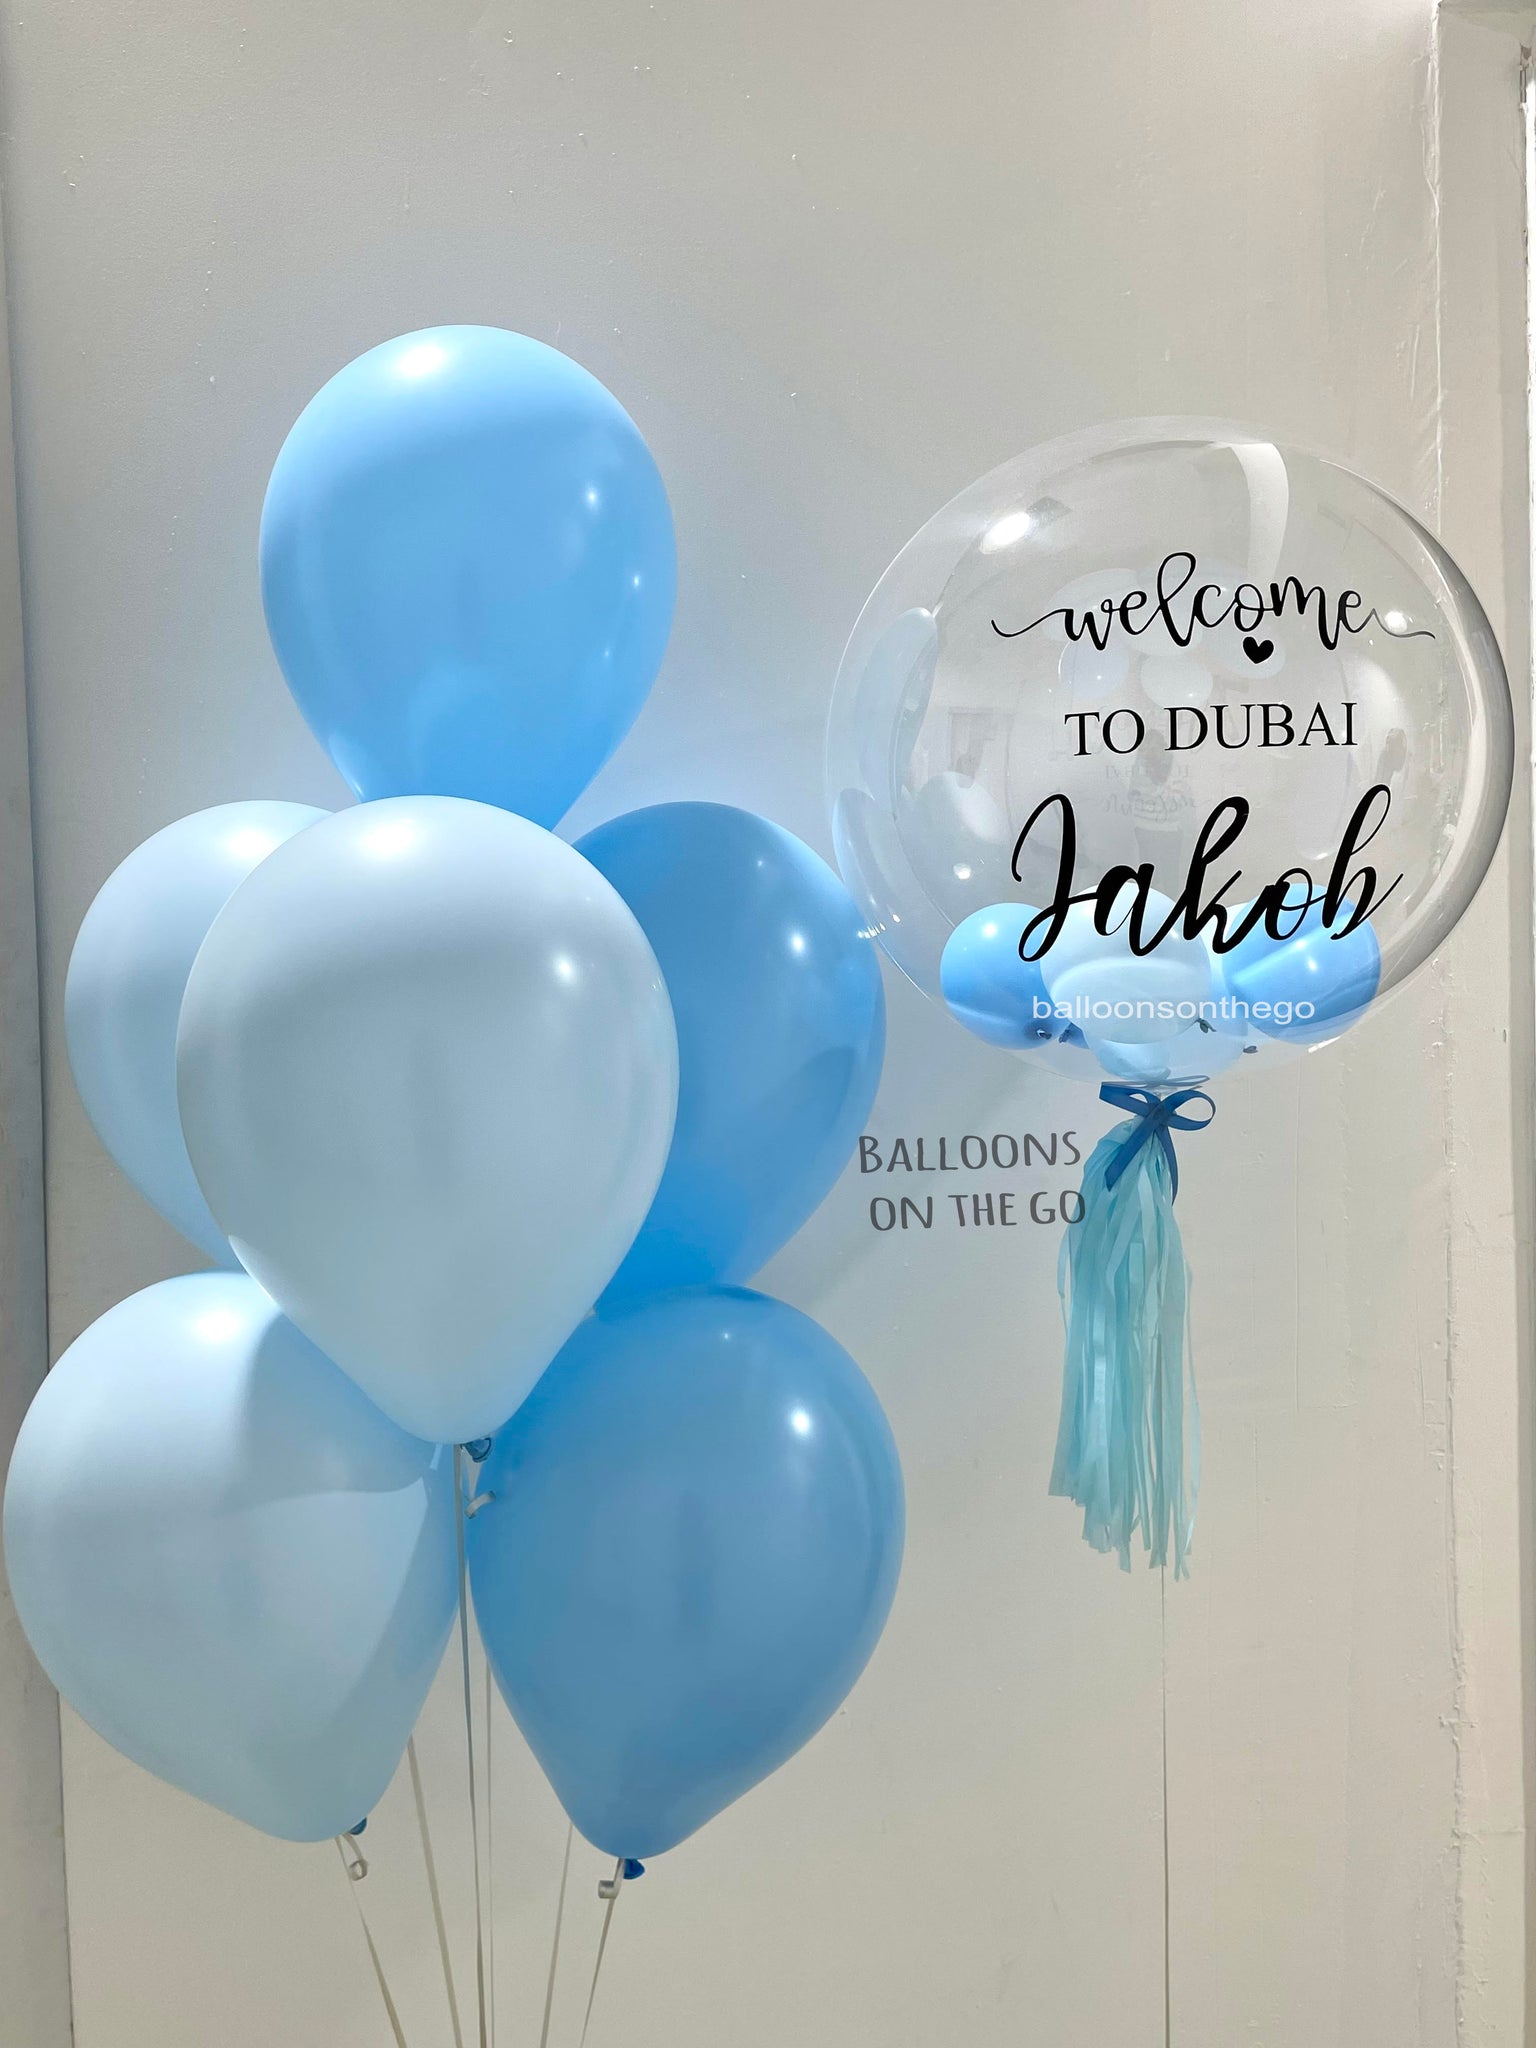 Habibi-Welcome To Dubai